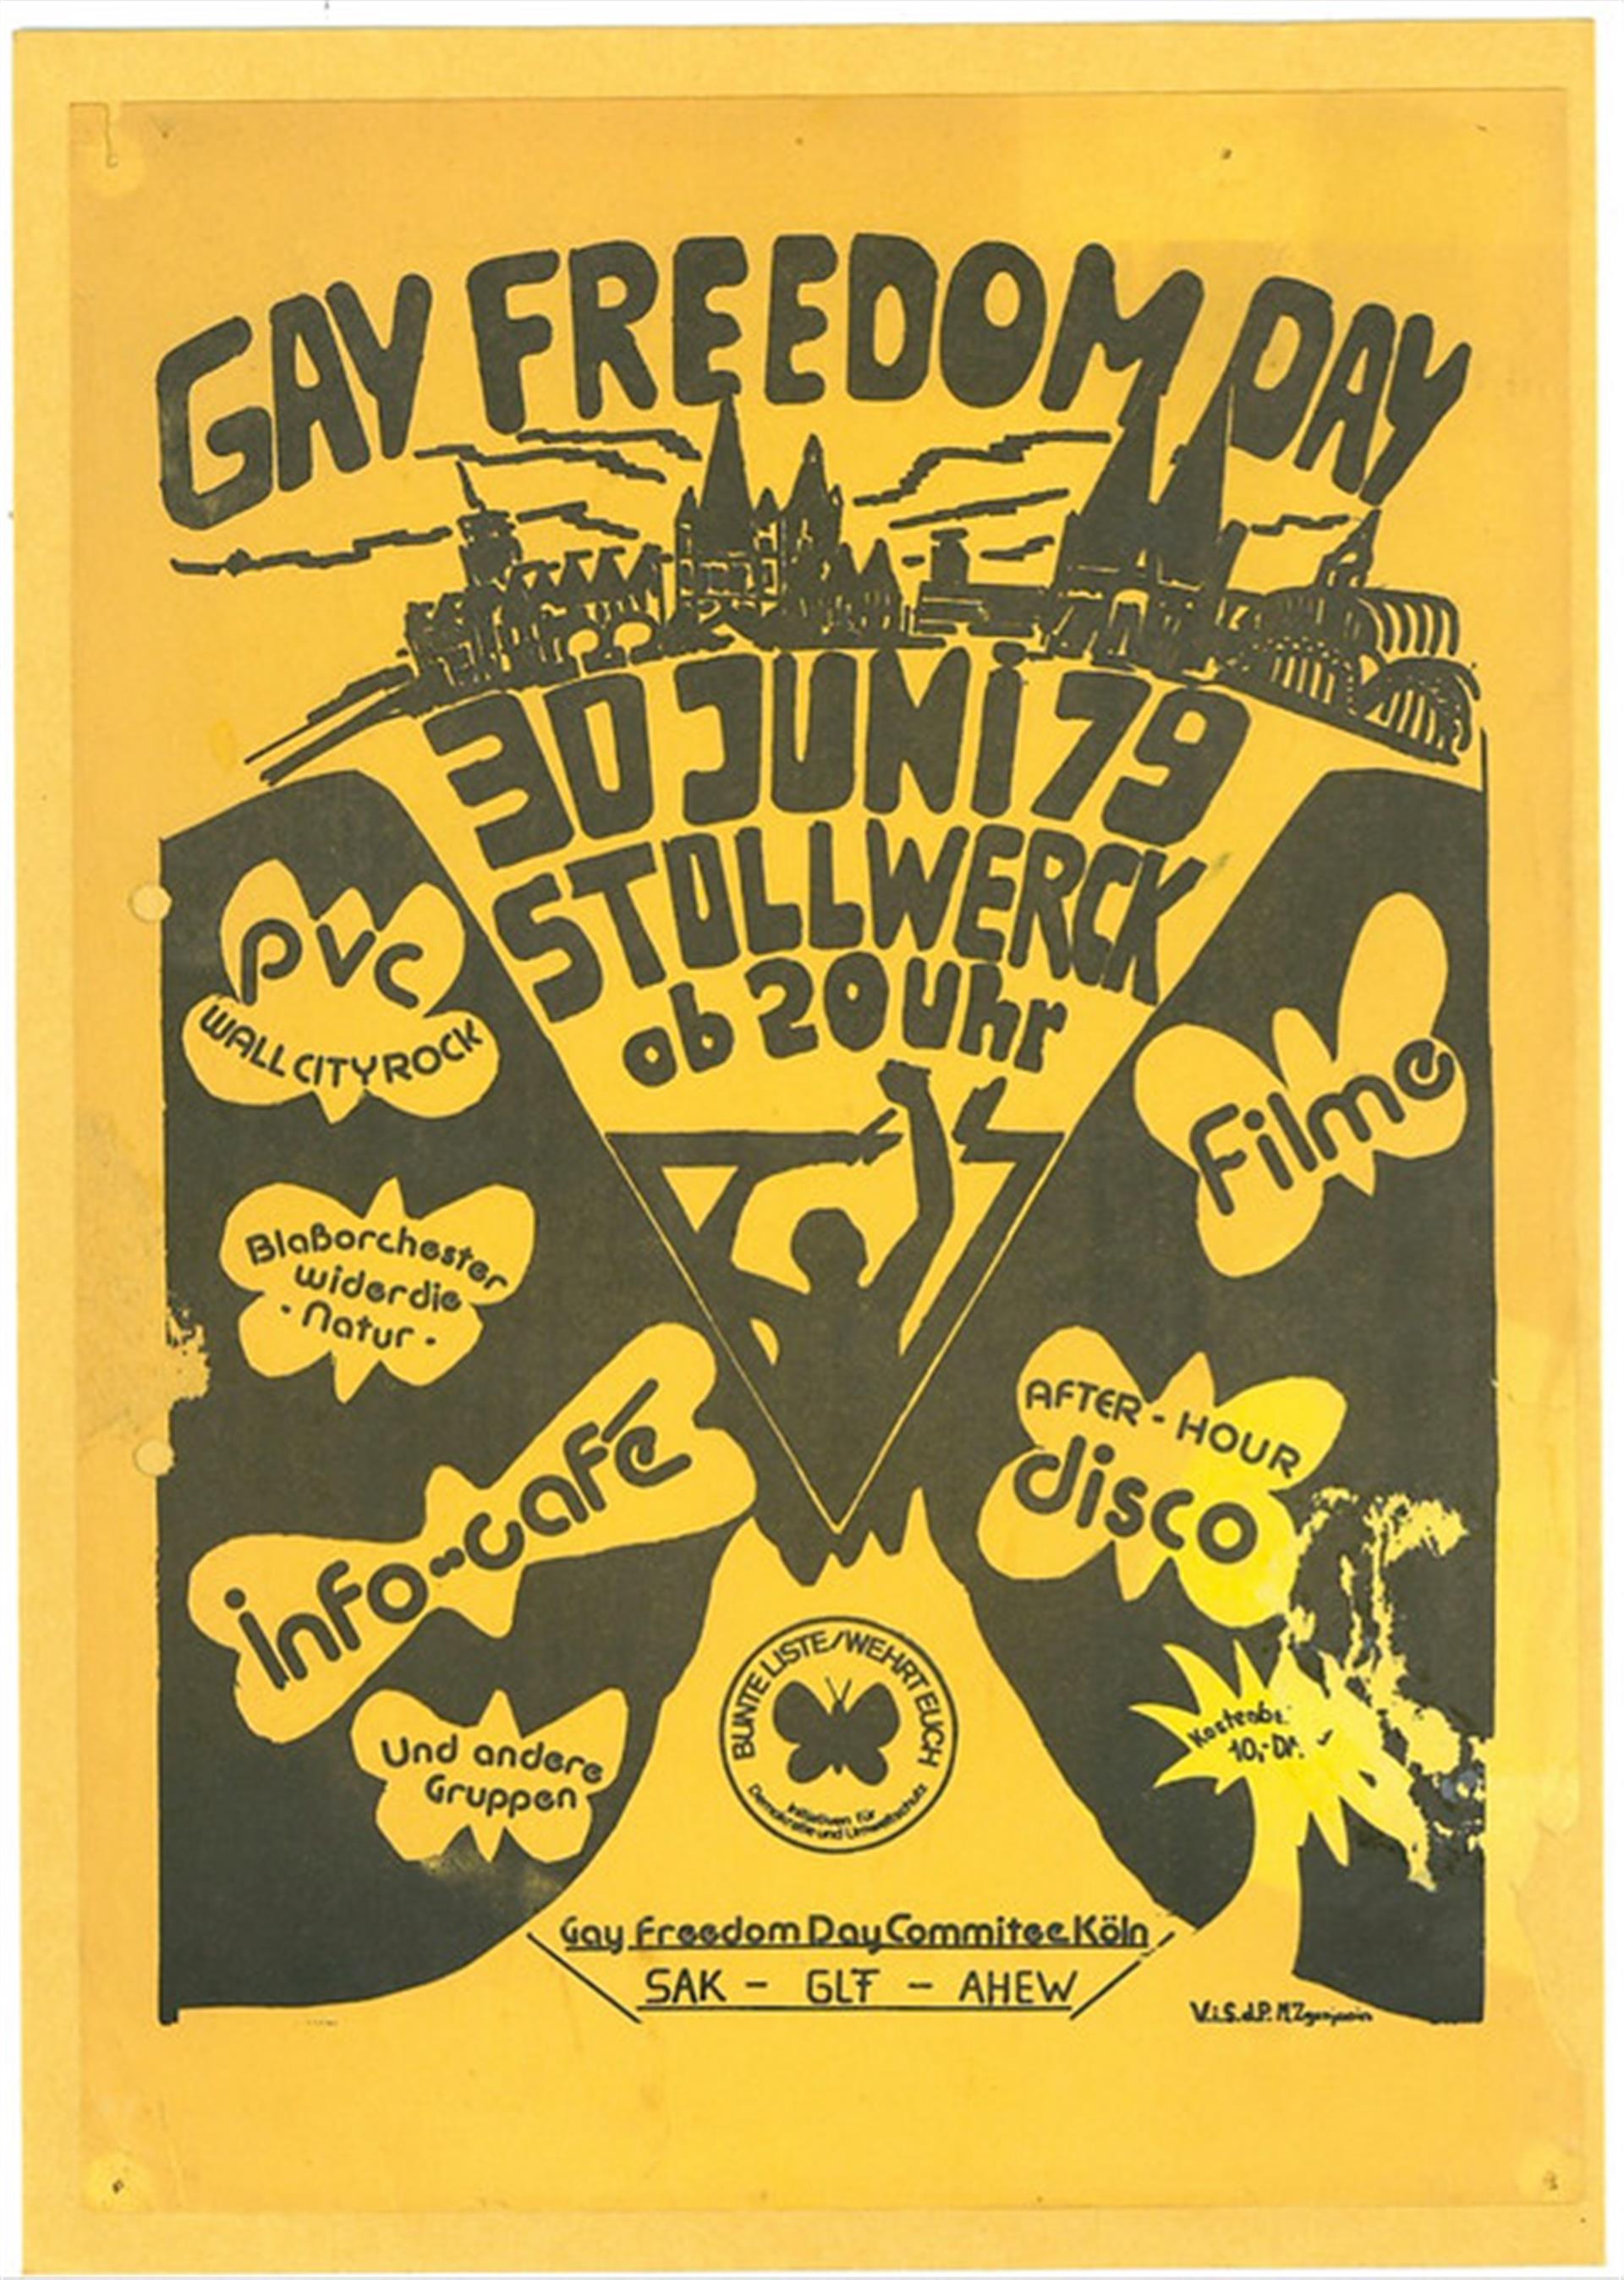 Plakat zu dem am 30. Juni 1979 erstmals in Köln gefeierten "Christopher Street Day" (CSD). Veranstaltungen unter dem Slogan "Gay Freedom Day" finden auf dem wenig später besetzten Stollwerck-Gelände statt. &copy; Raimer, Peter / Archiv: Centrum Schwule Geschichte e.V., Köln / CC BY-SA 4.0